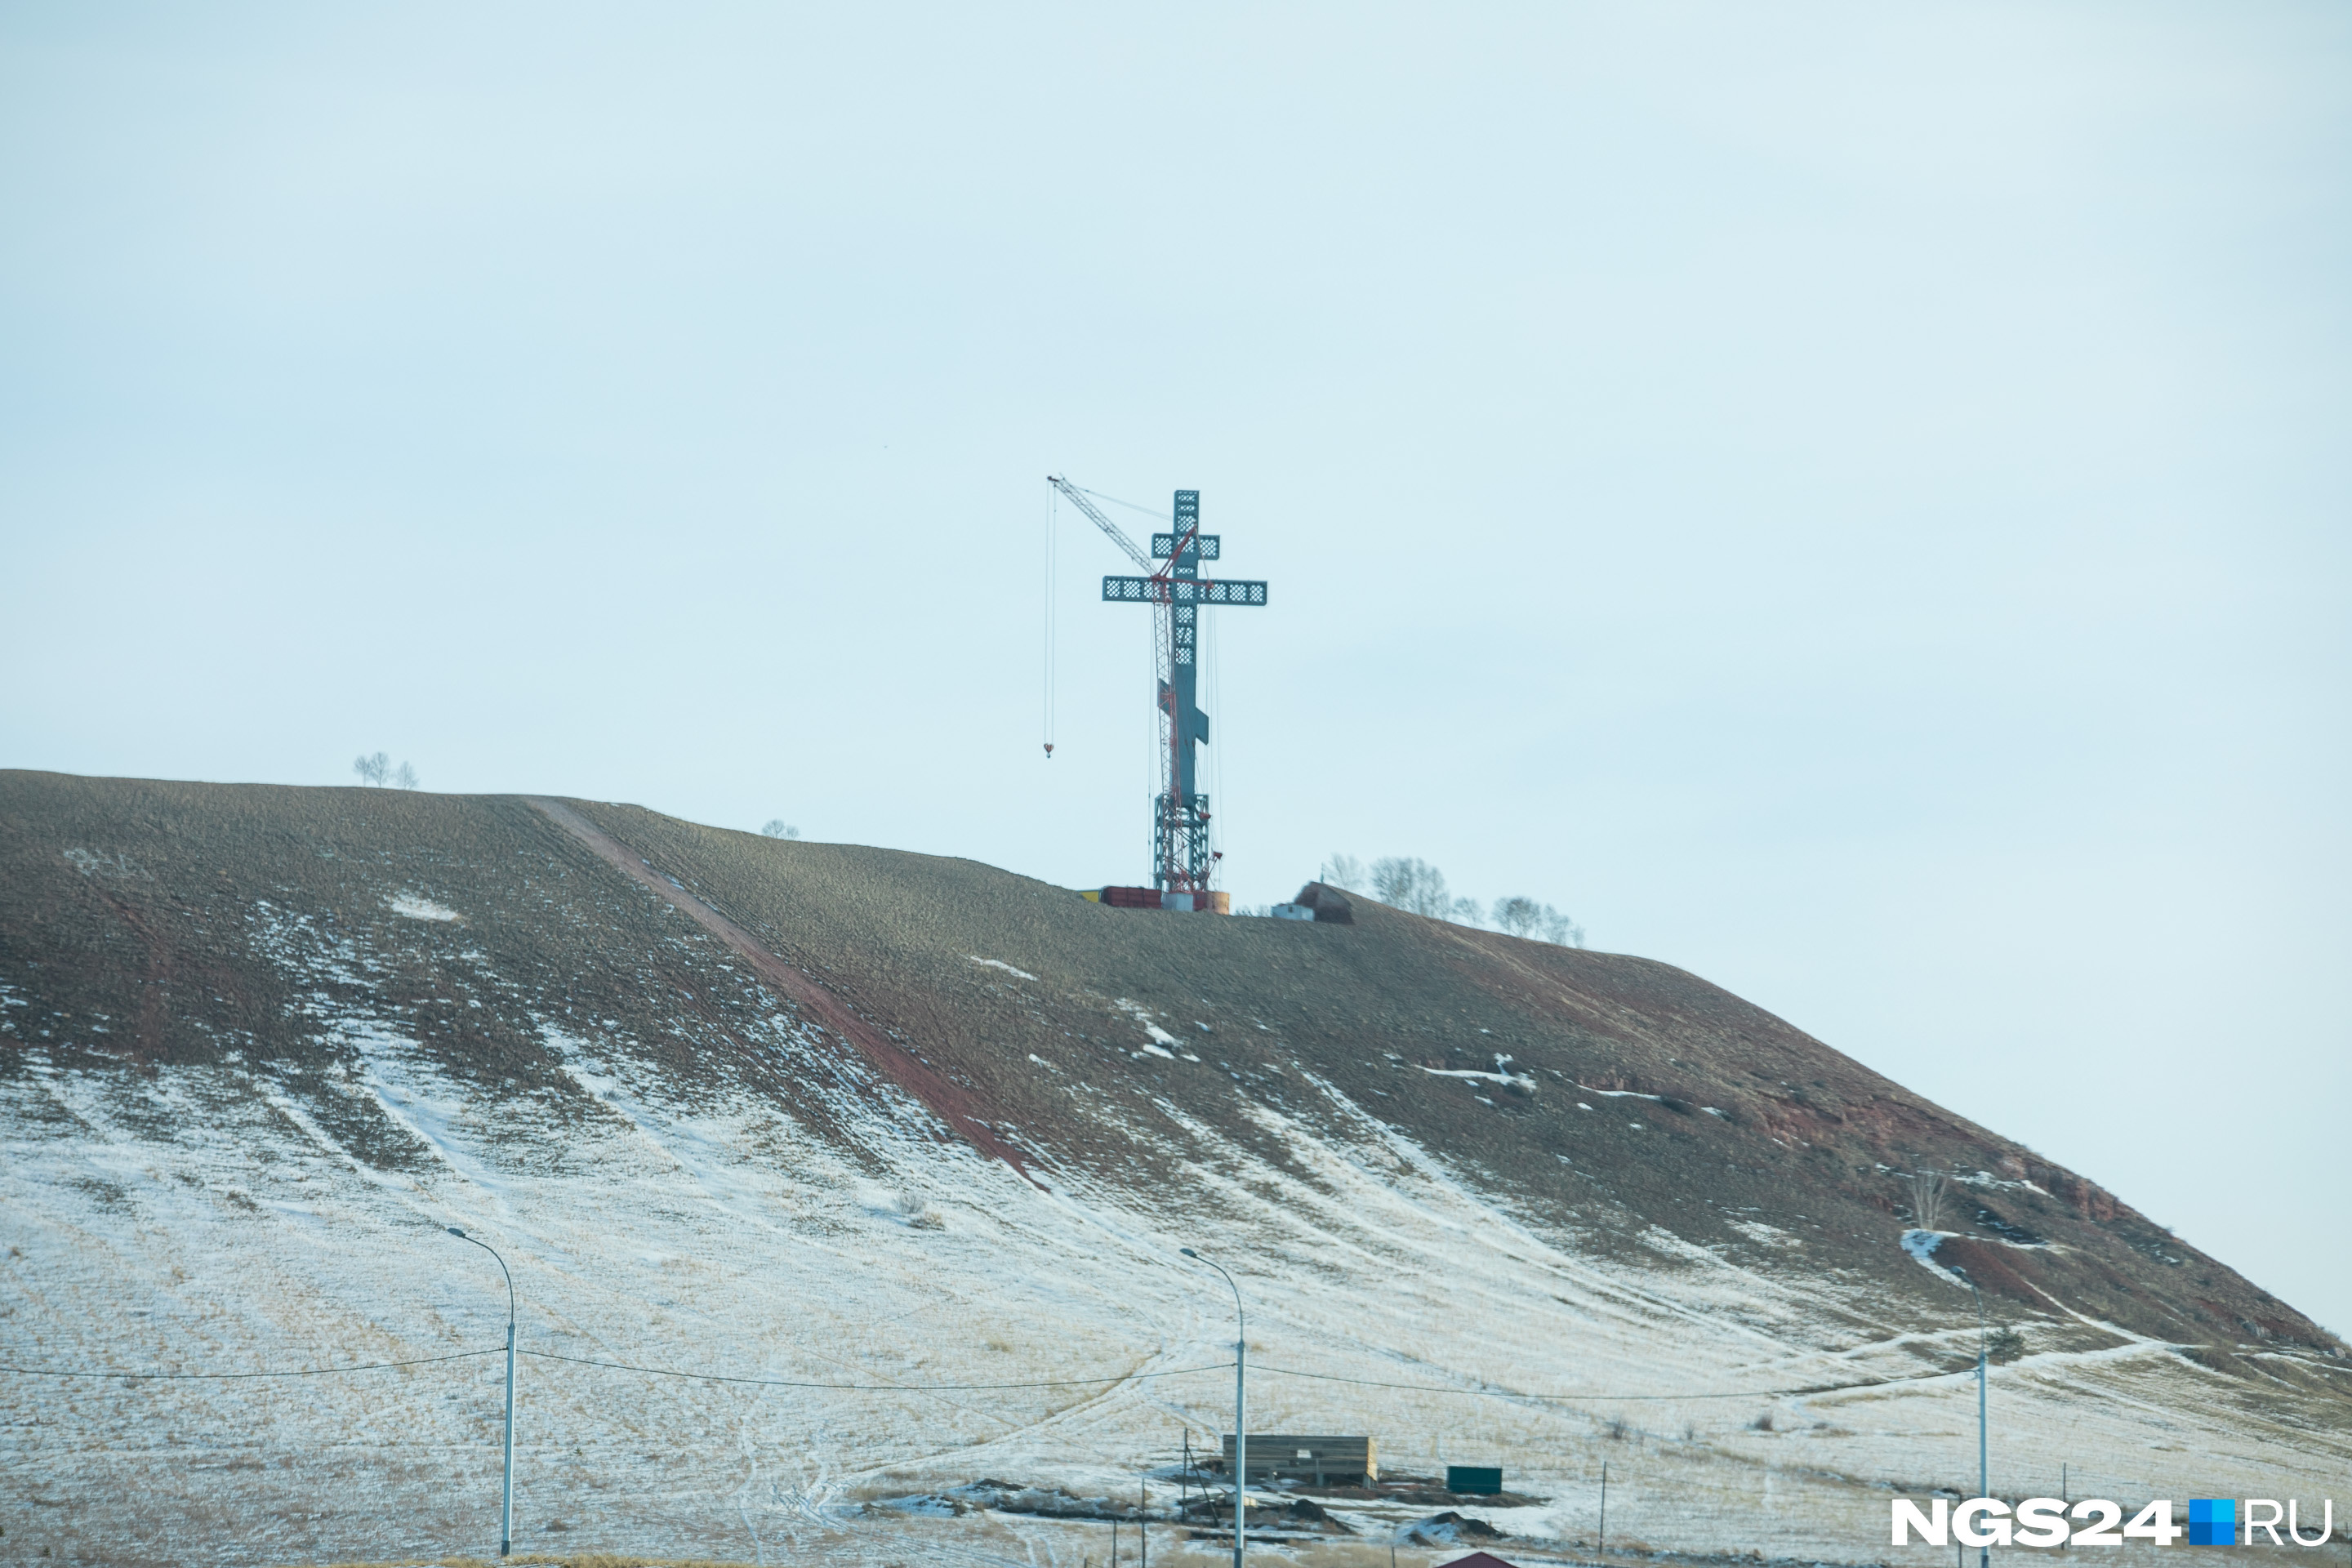 На Дрокинской горе возвели крест. А мы представили, <a href="https://ngs24.ru/text/gorod/2019/02/26/65994751/" target="_blank" class="_">что могло бы быть на его месте</a>.